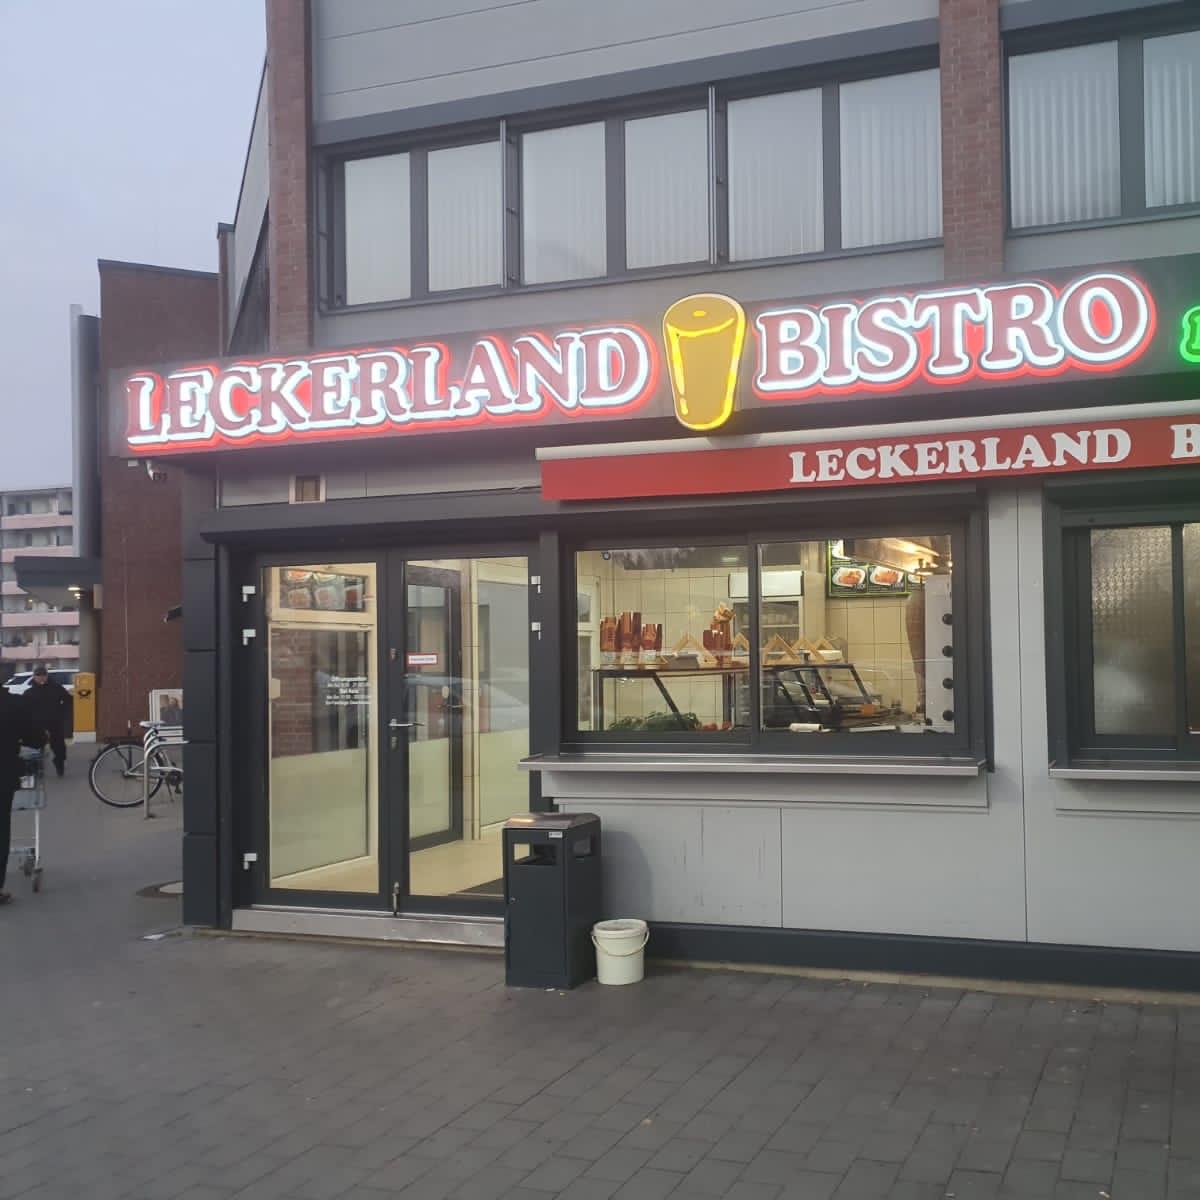 Restaurant "Leckerland Bistro - Döner & Asia Spezialitäten" in Strausberg